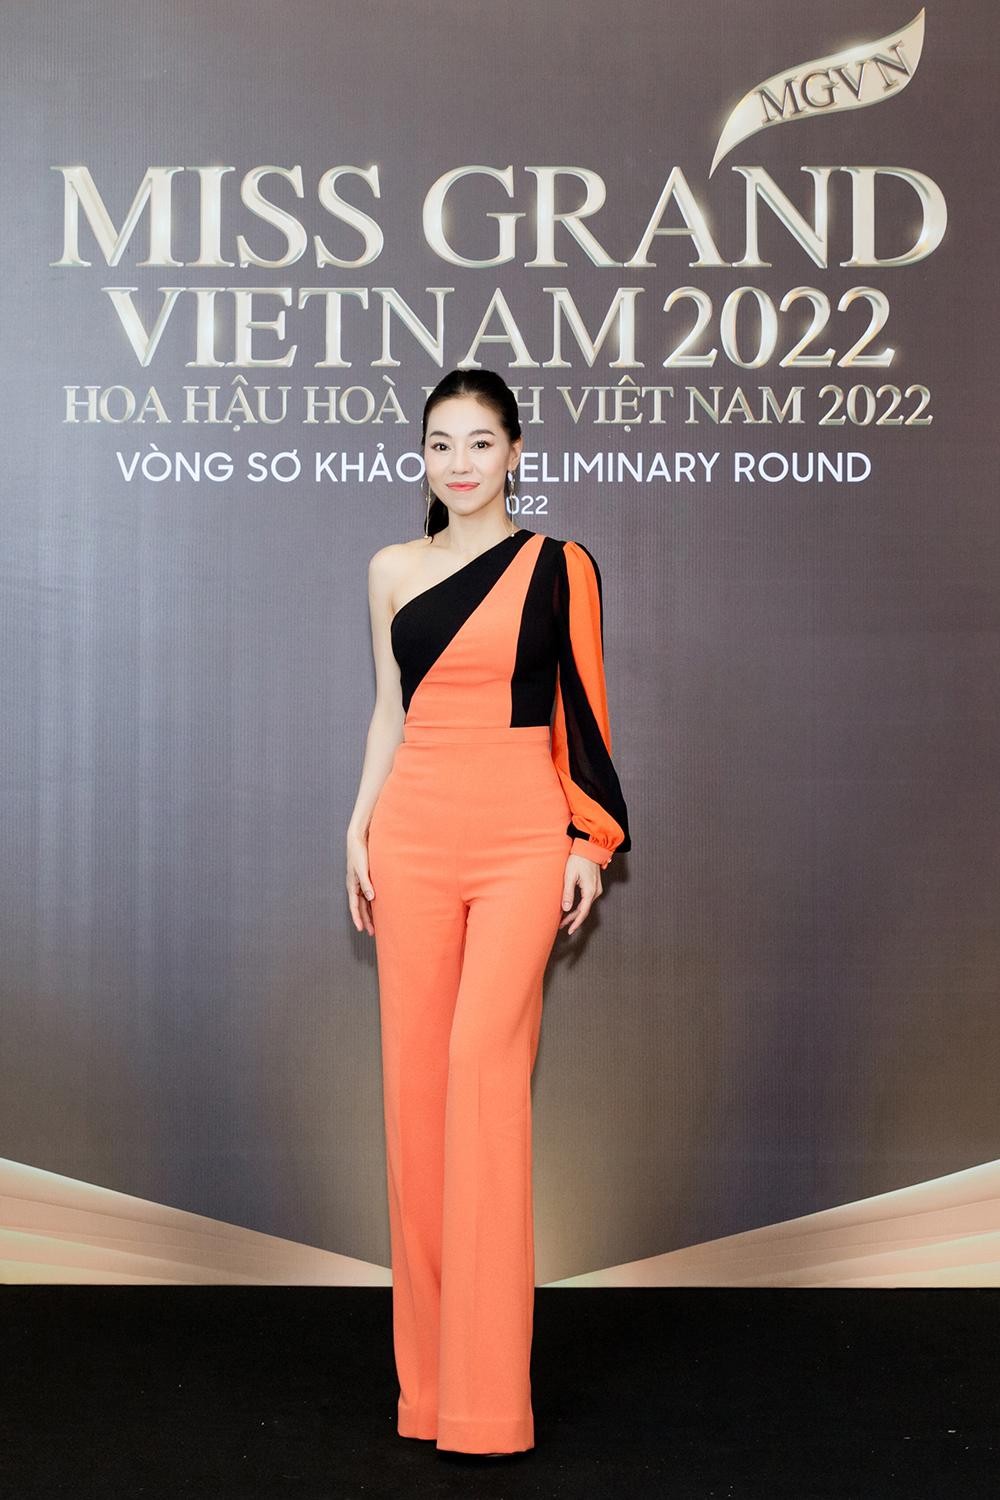 Thảm đỏ sơ khảo Miss Grand Vietnam 2022: Á hậu Kiều Loan, Ngọc Thảo đọ sắc vóc nóng bỏng - Ảnh 10.